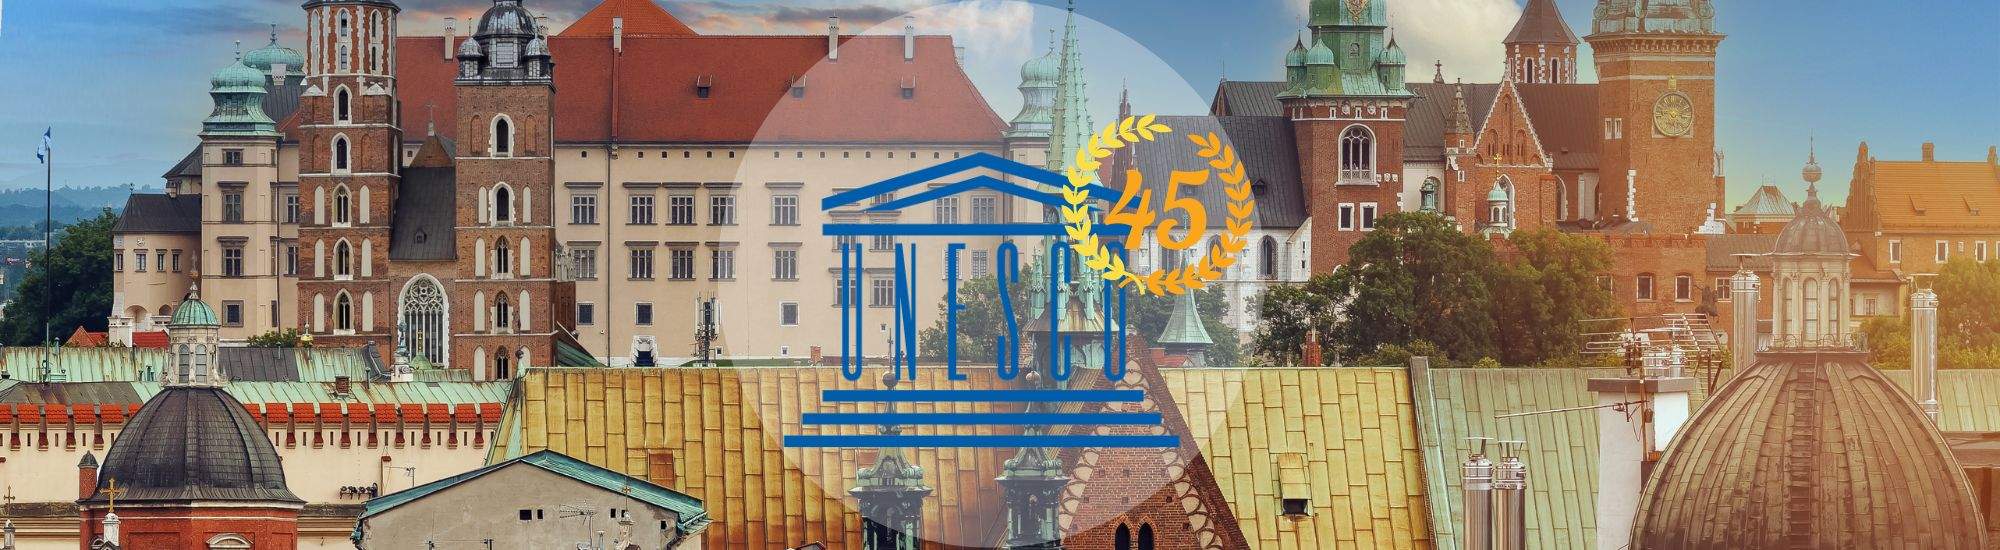 Cracovia festeggia 45 anni di patrimonio UNESCO